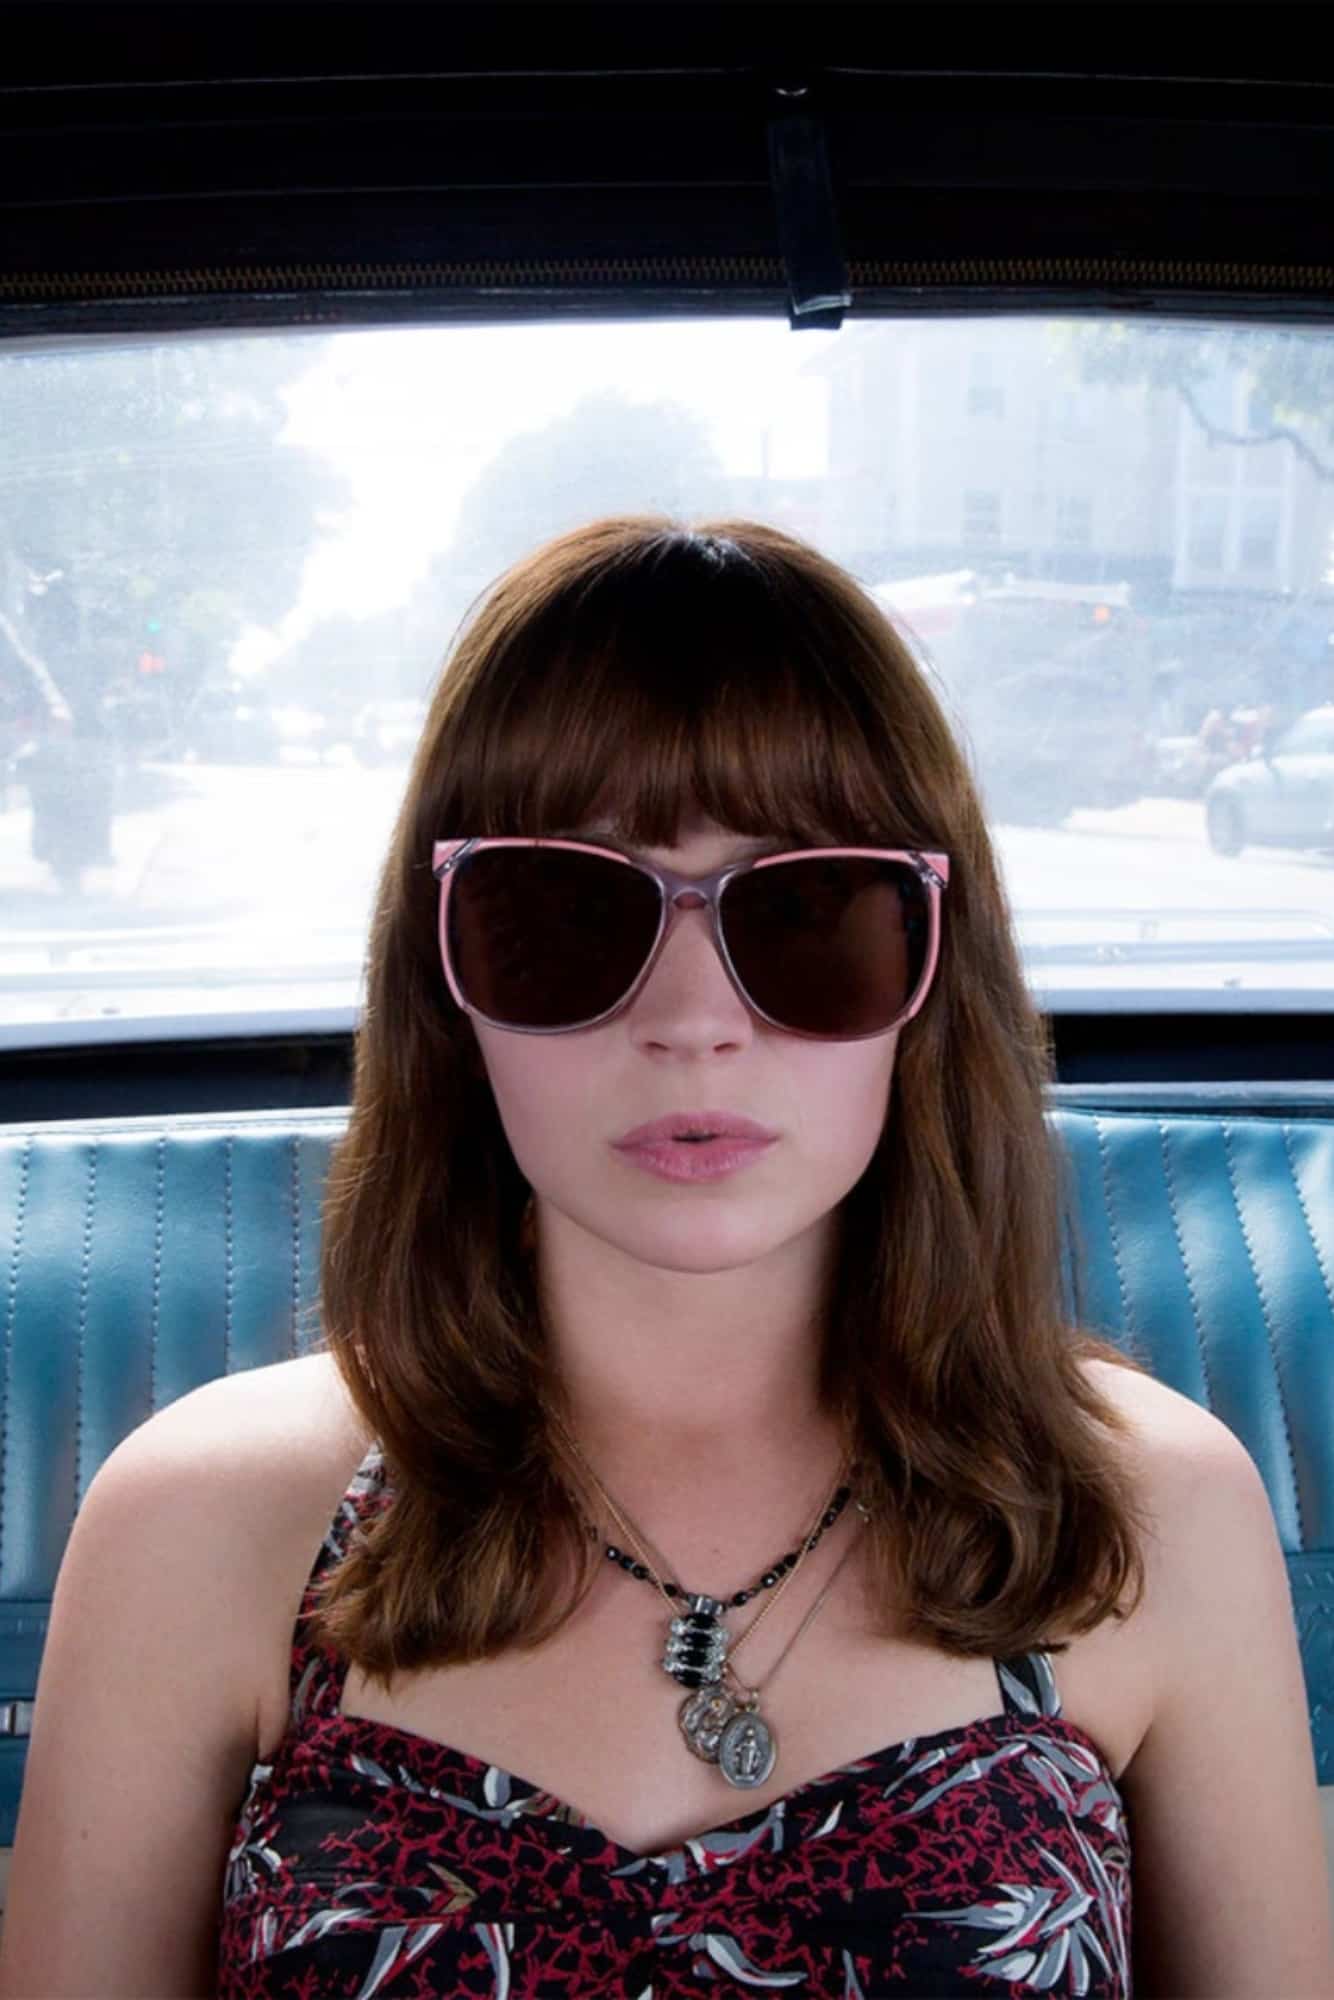 girlboss netflix nasty gal sunglasses taxi millennials